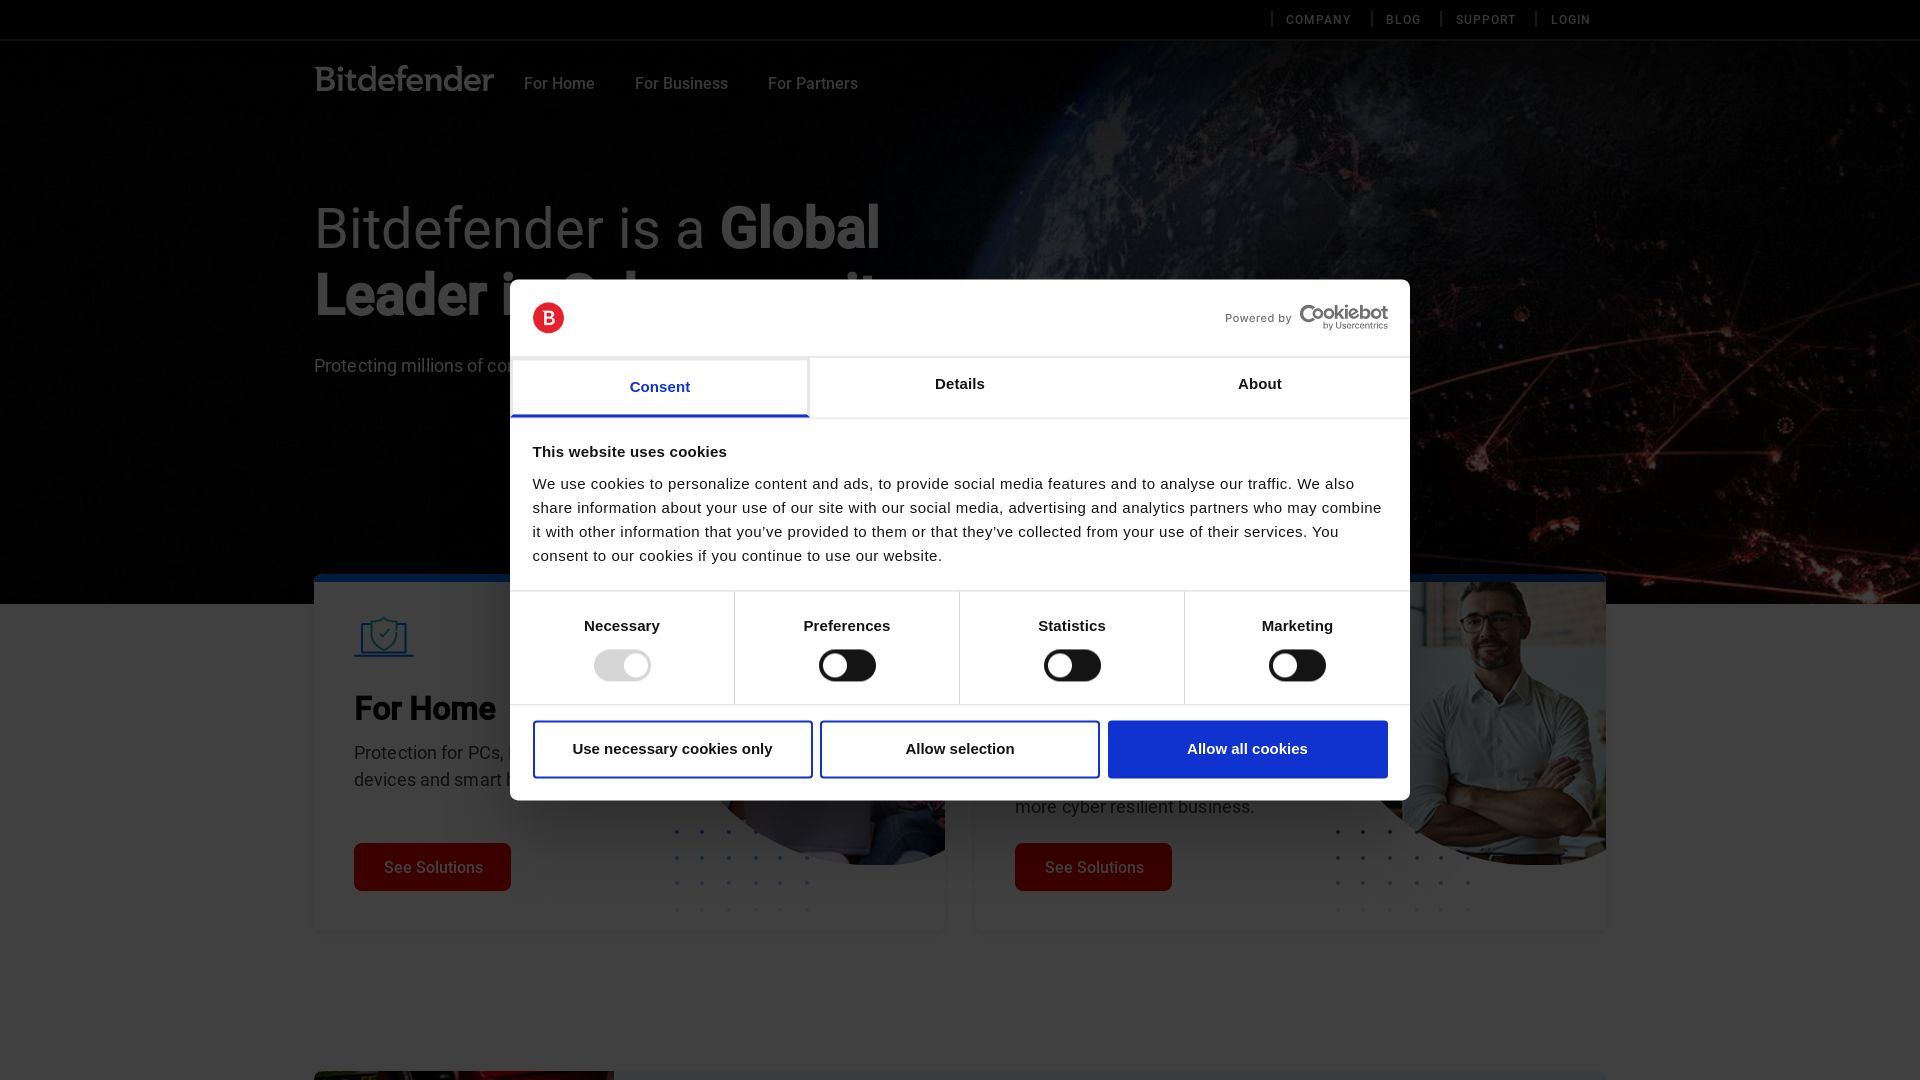 Website status bitdefender.com is   ONLINE